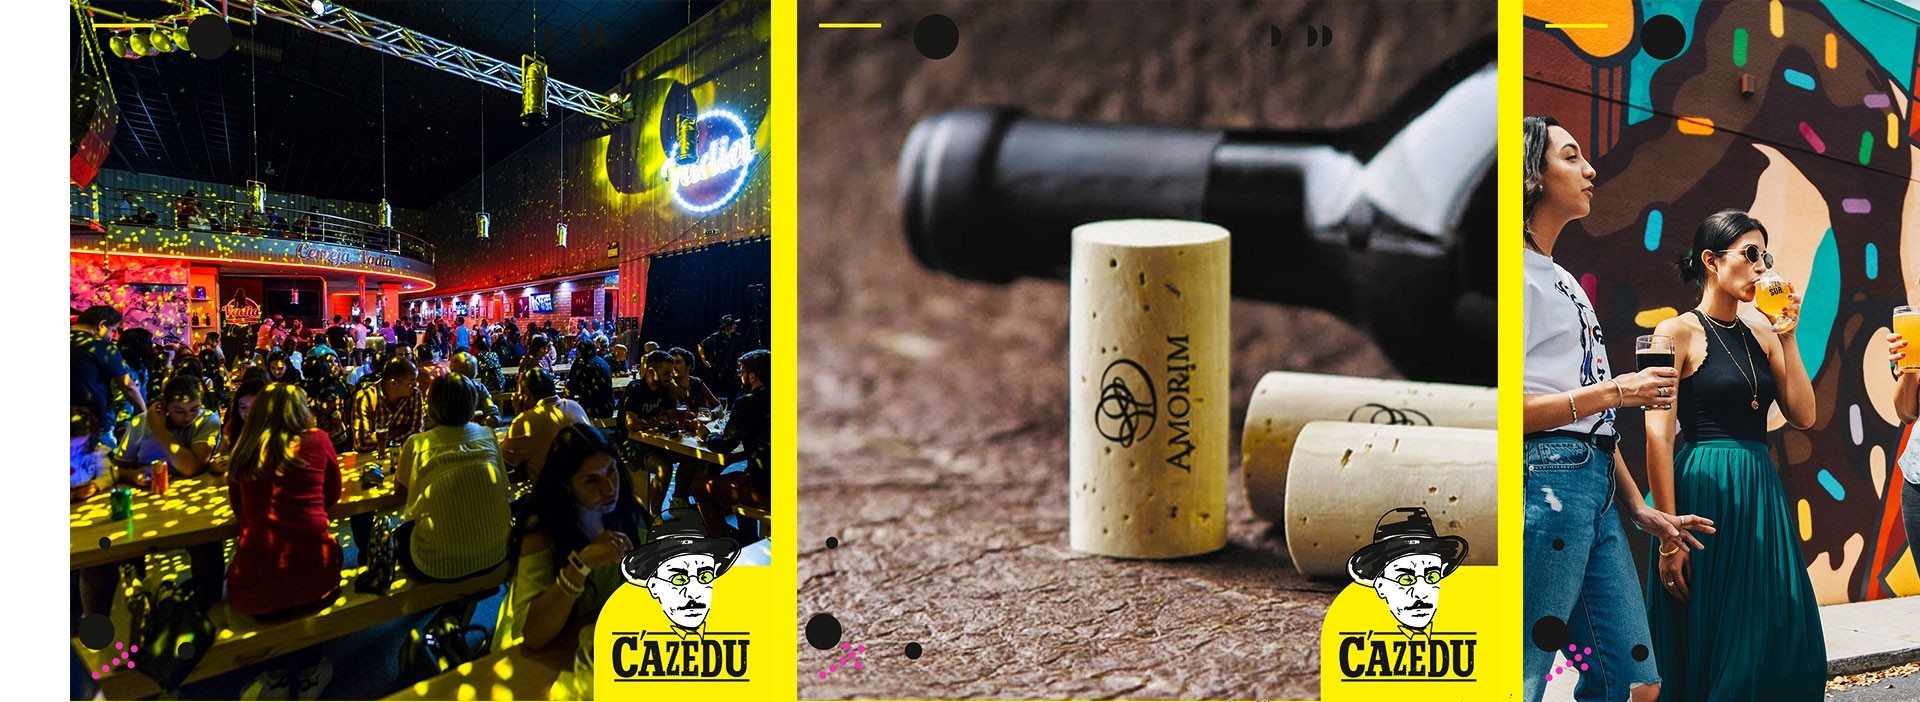 Beer Festival Cazedo - Detalhe 6 - LOBA.cx